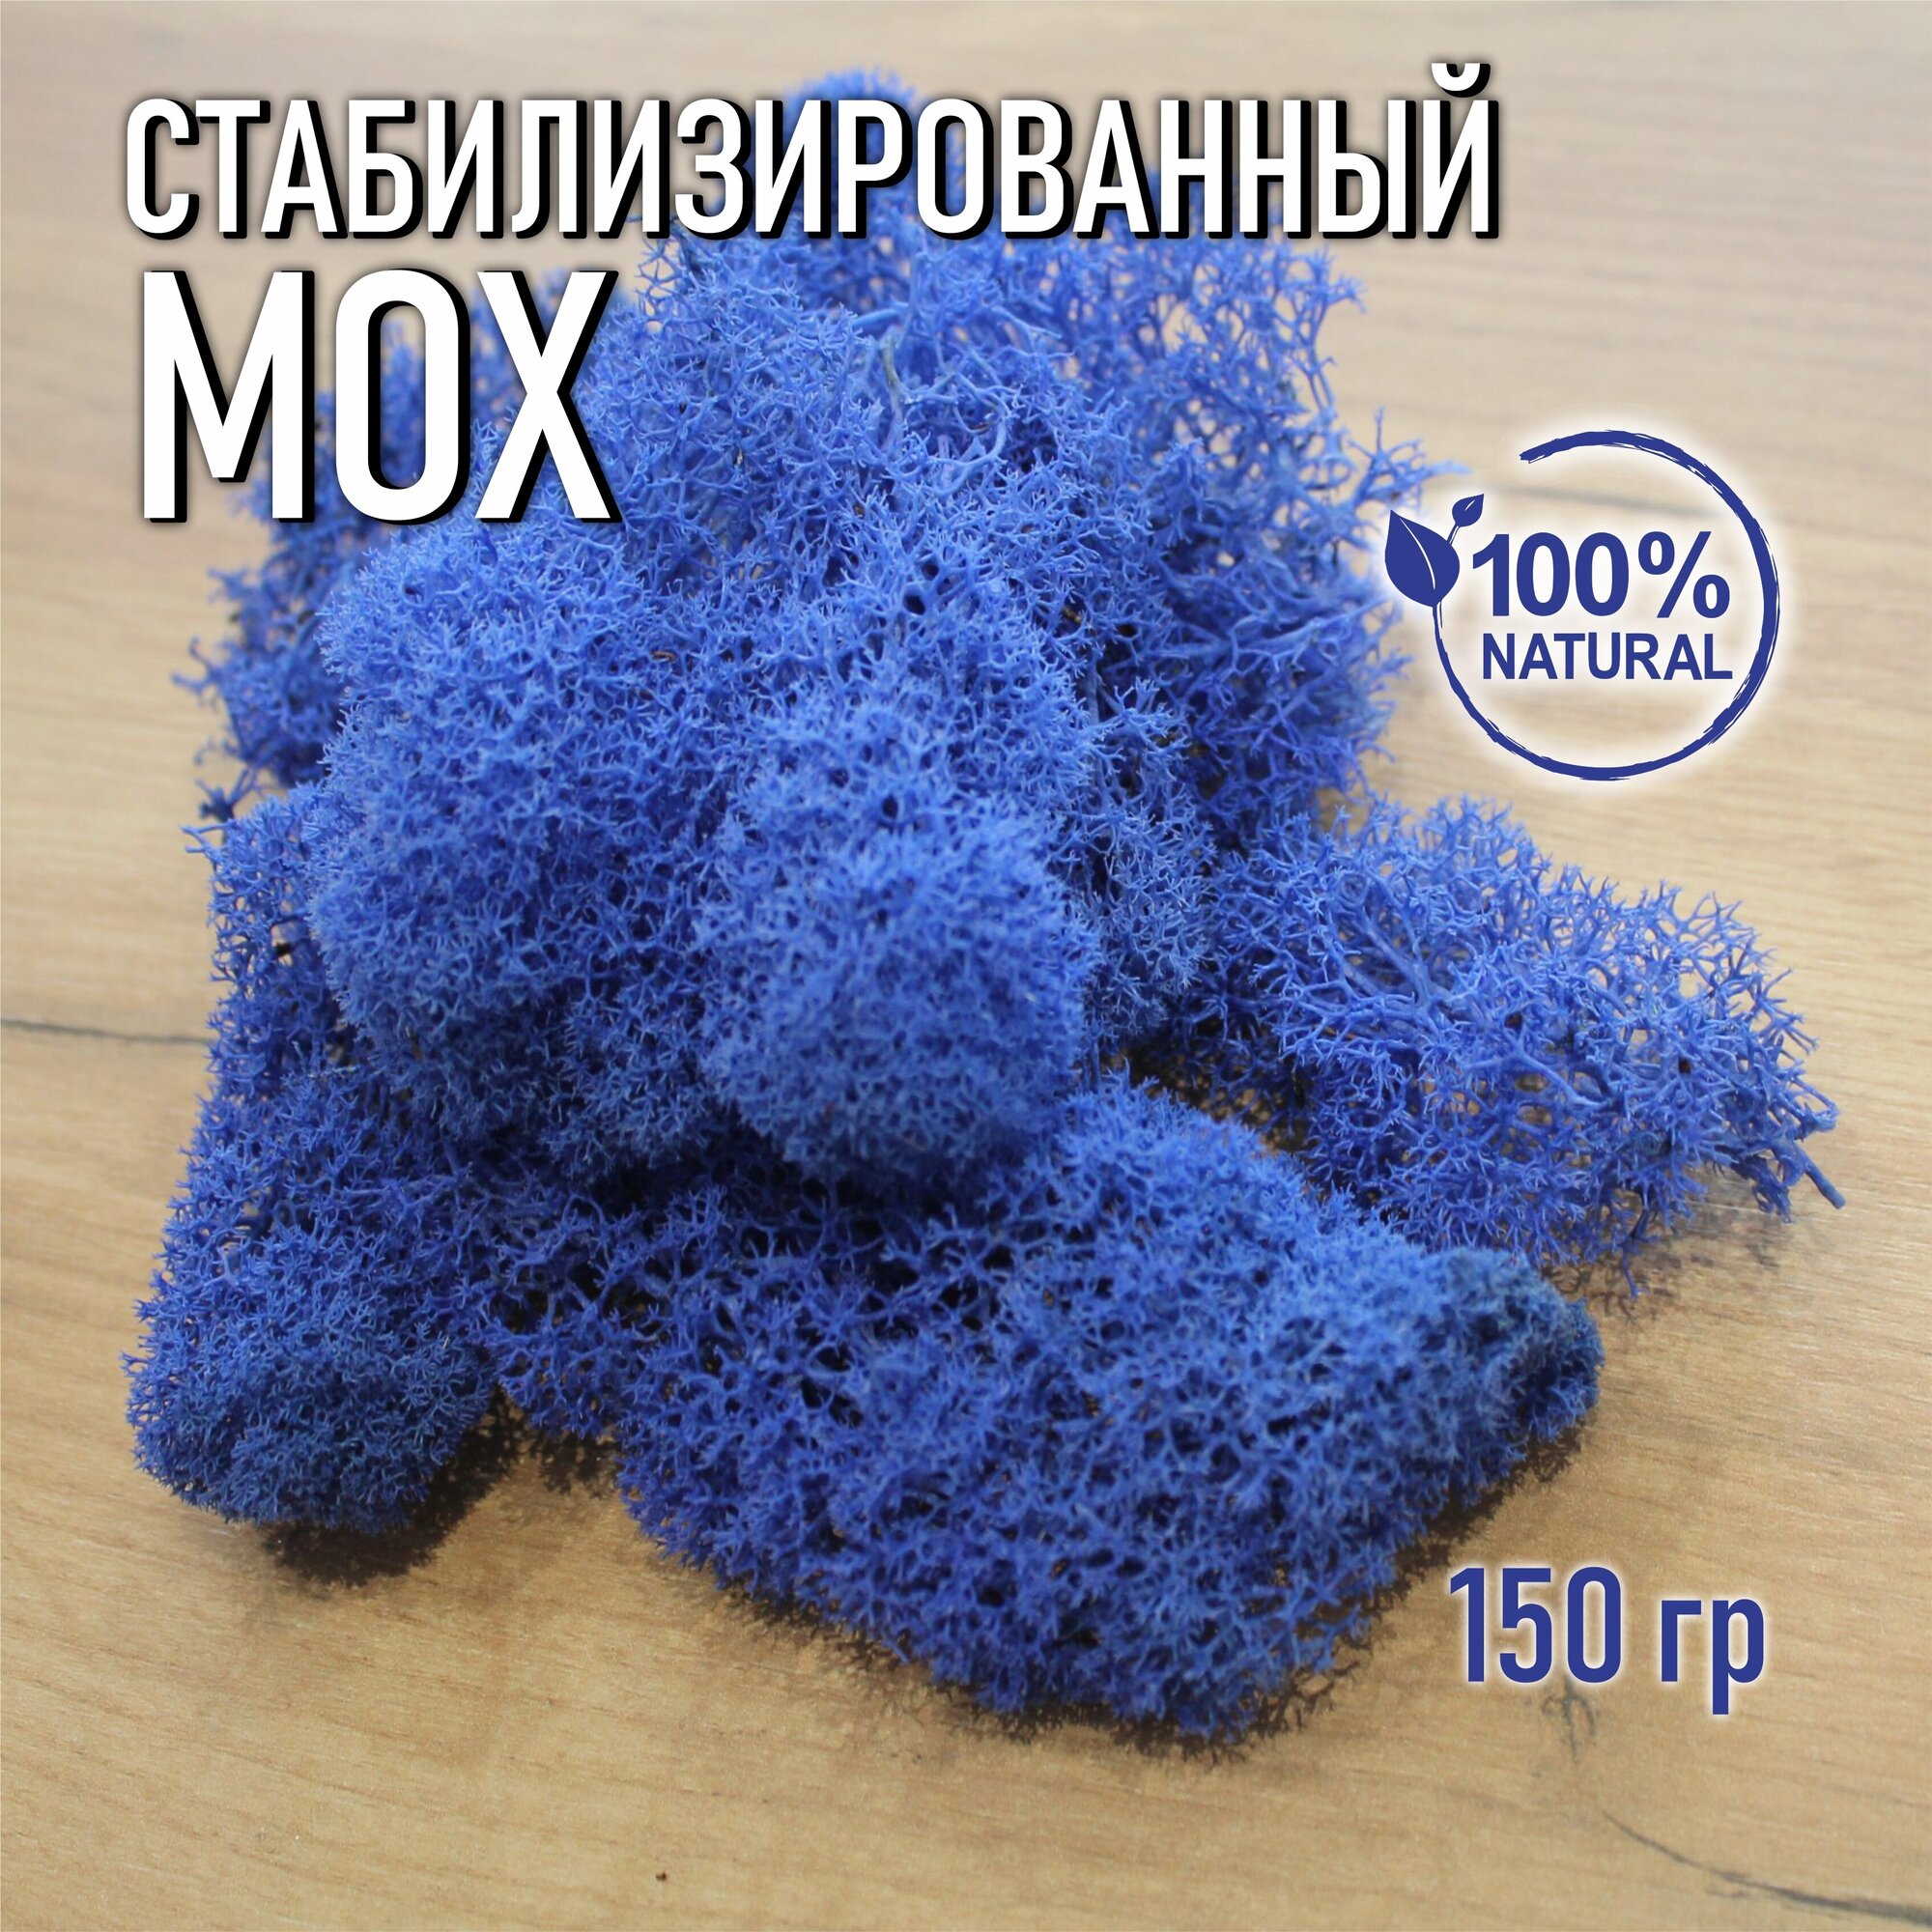 Стабилизированный мох 150 гр цвет голубой, Ягель мох для декора moss